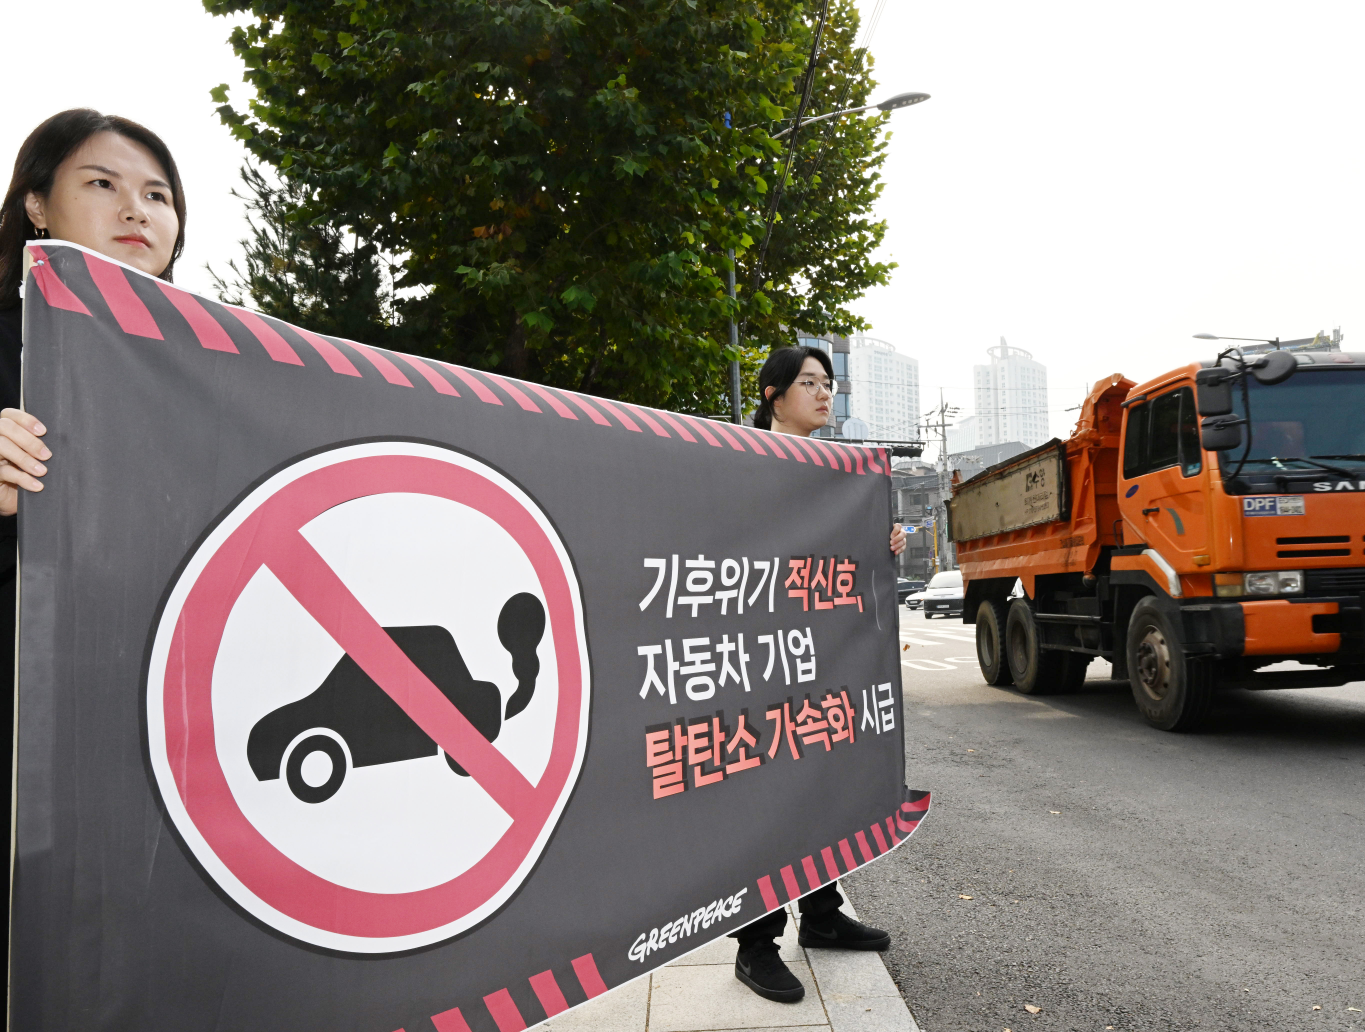 국제환경단체 그린피스 서울사무소에서 전기차 전환 캠페이너로 활동하는 홍혜란(왼쪽), 최은서씨가 31일 서울 양재동의 한 도로에서 내연기관차 판매 중단을 촉구하는 캠페인을 벌이고 있다. 도준석 기자